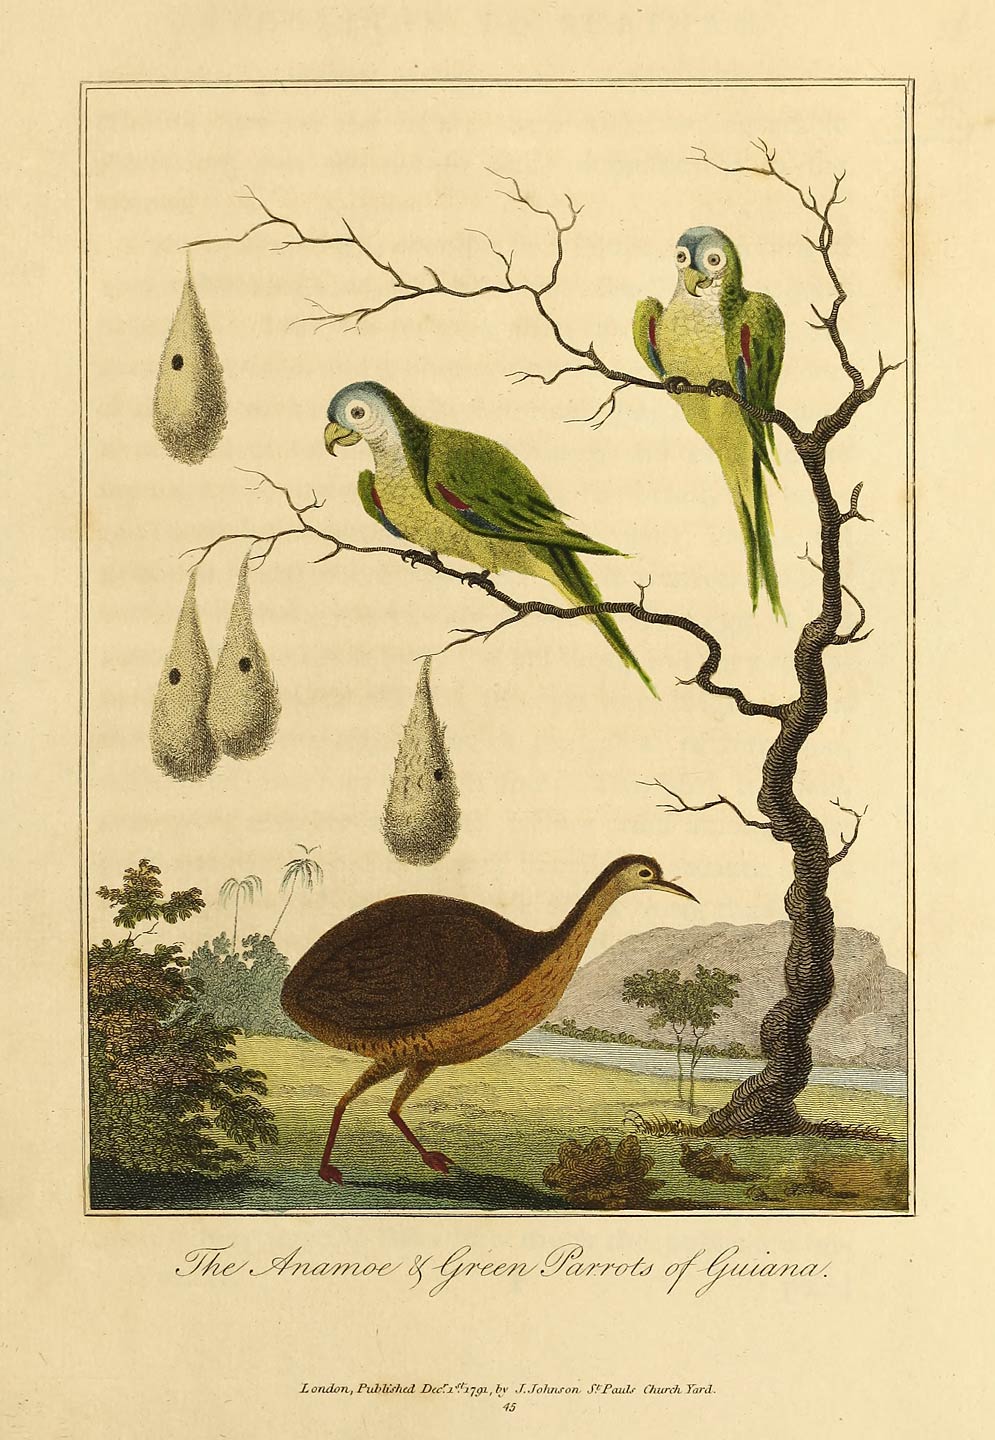 The Anamoe & Green Parrots of Guiana.